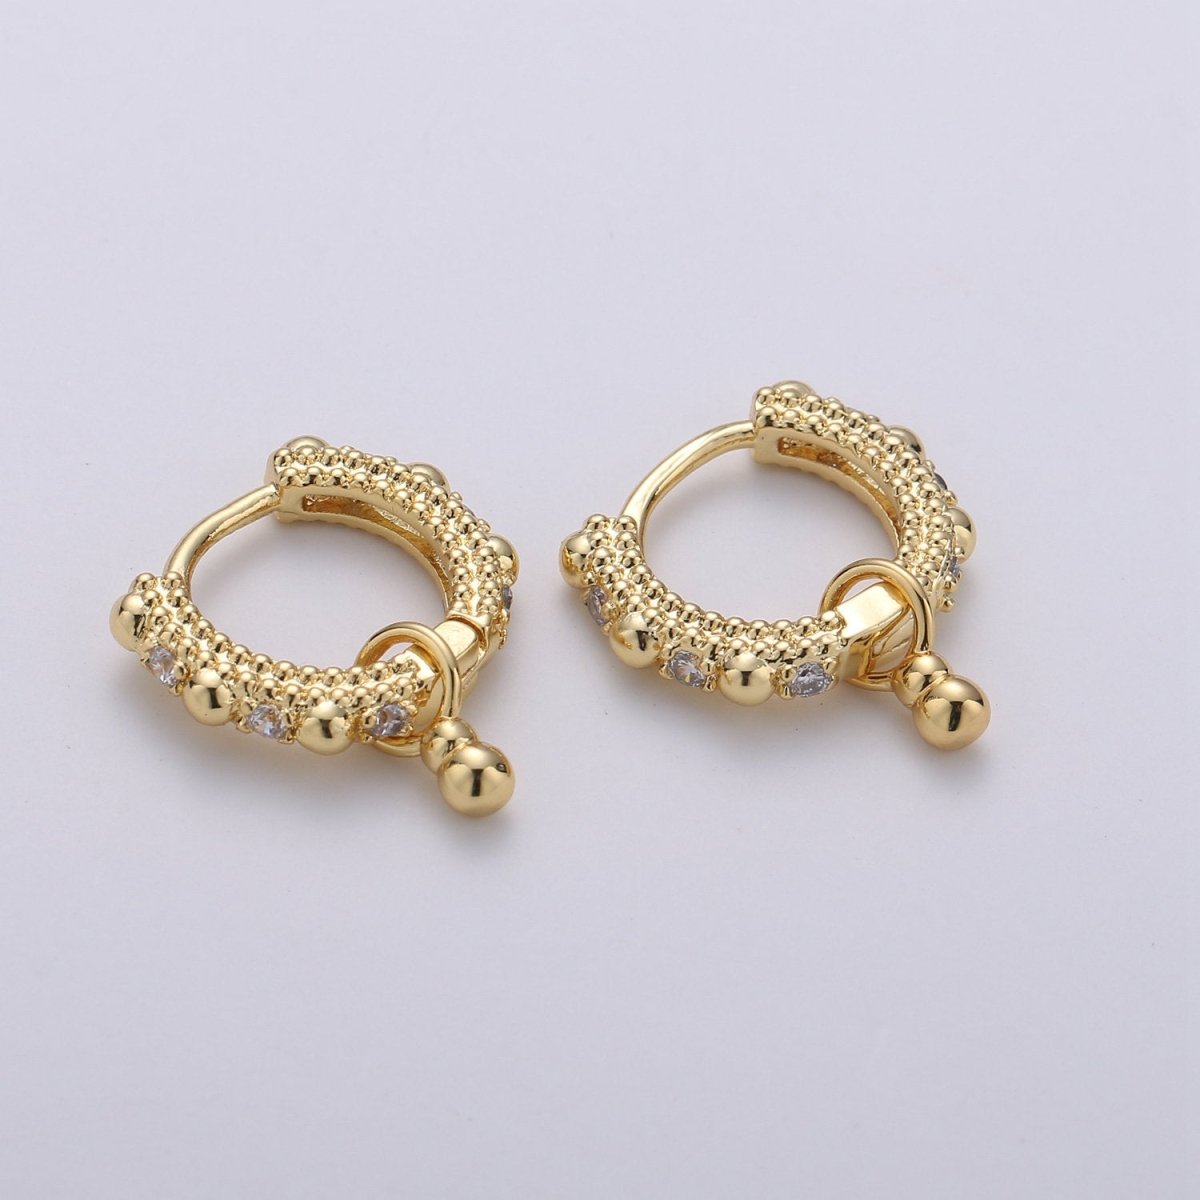 Beaded Hoop Earrings, Ball Hoop Earrings, Small Gold Hoop Earrings, Minimalist Huggie Hoop Earrings, Boho Hoop Earrings, Gold Huggie Earring Q-219 Q-220 - DLUXCA